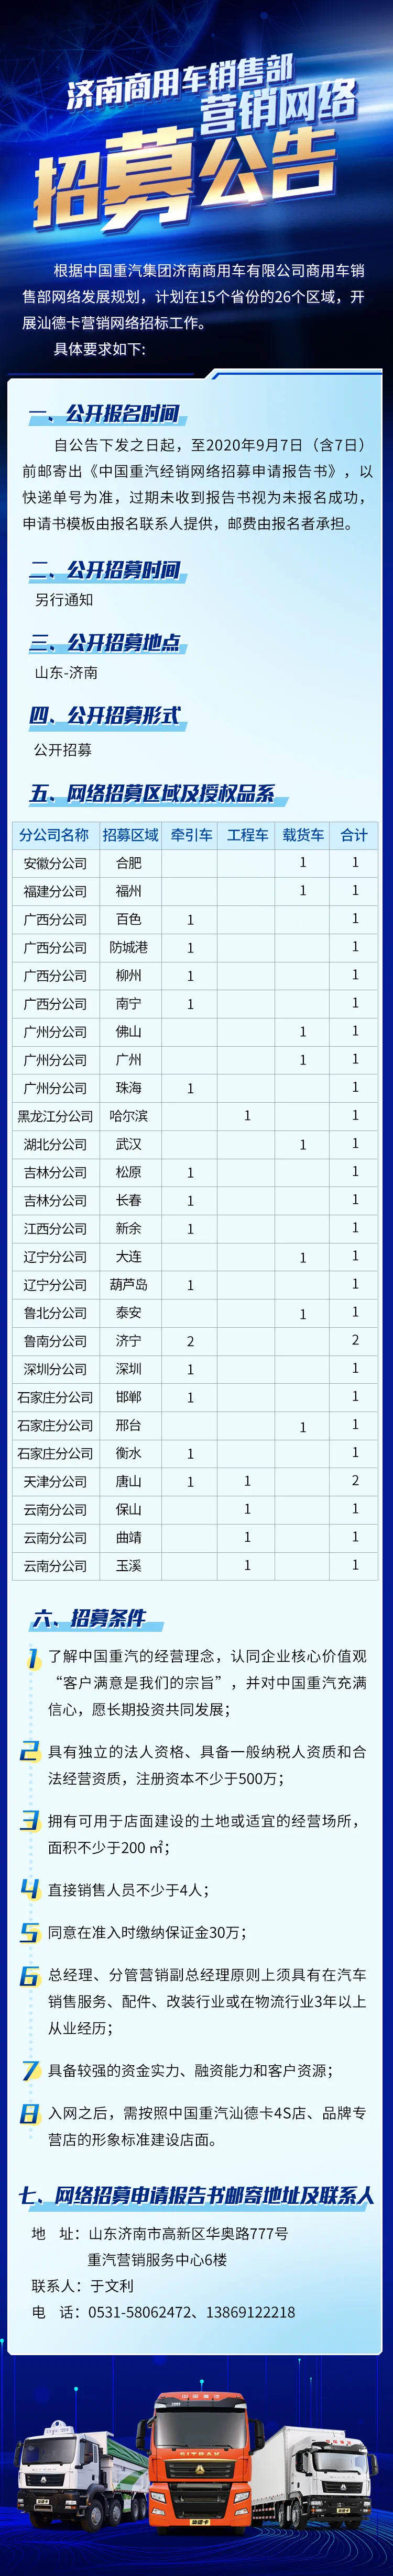 中国重汽济南商用车在15省26区域招募汕德卡营销网络